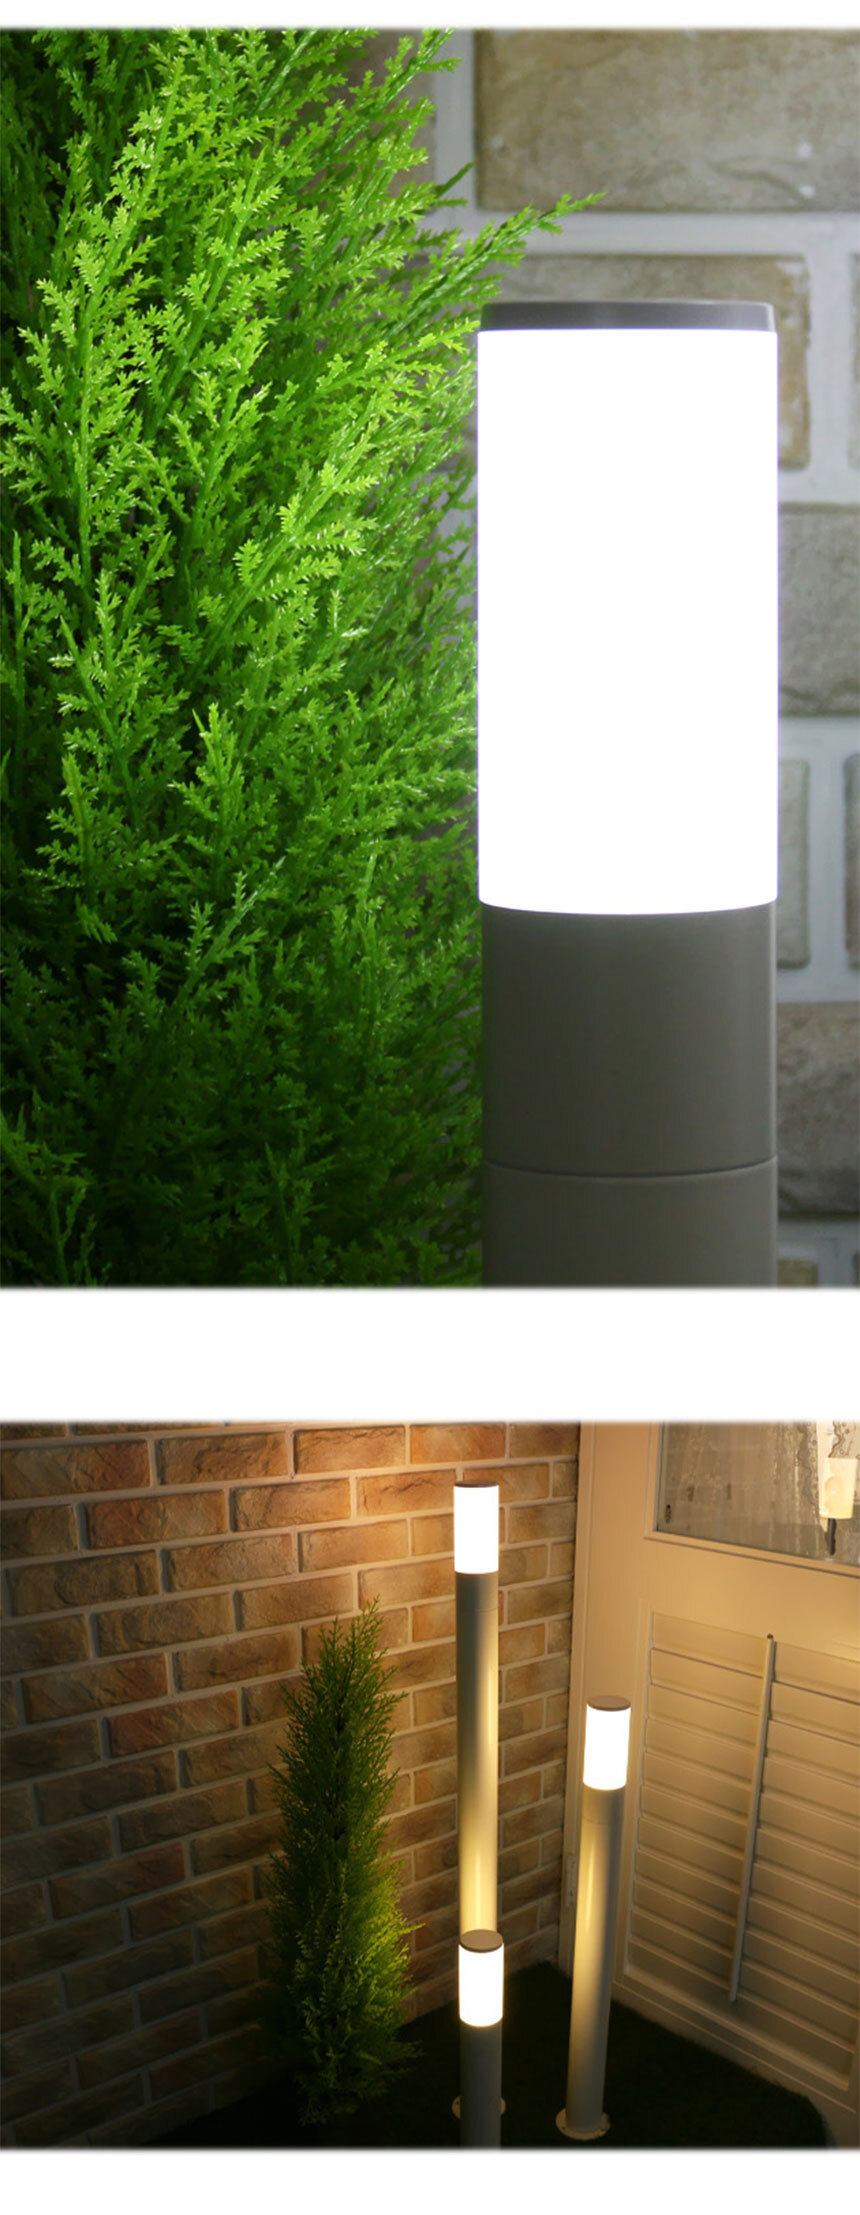 LED 미니 잔디등 샌딩(화이트) 소중대